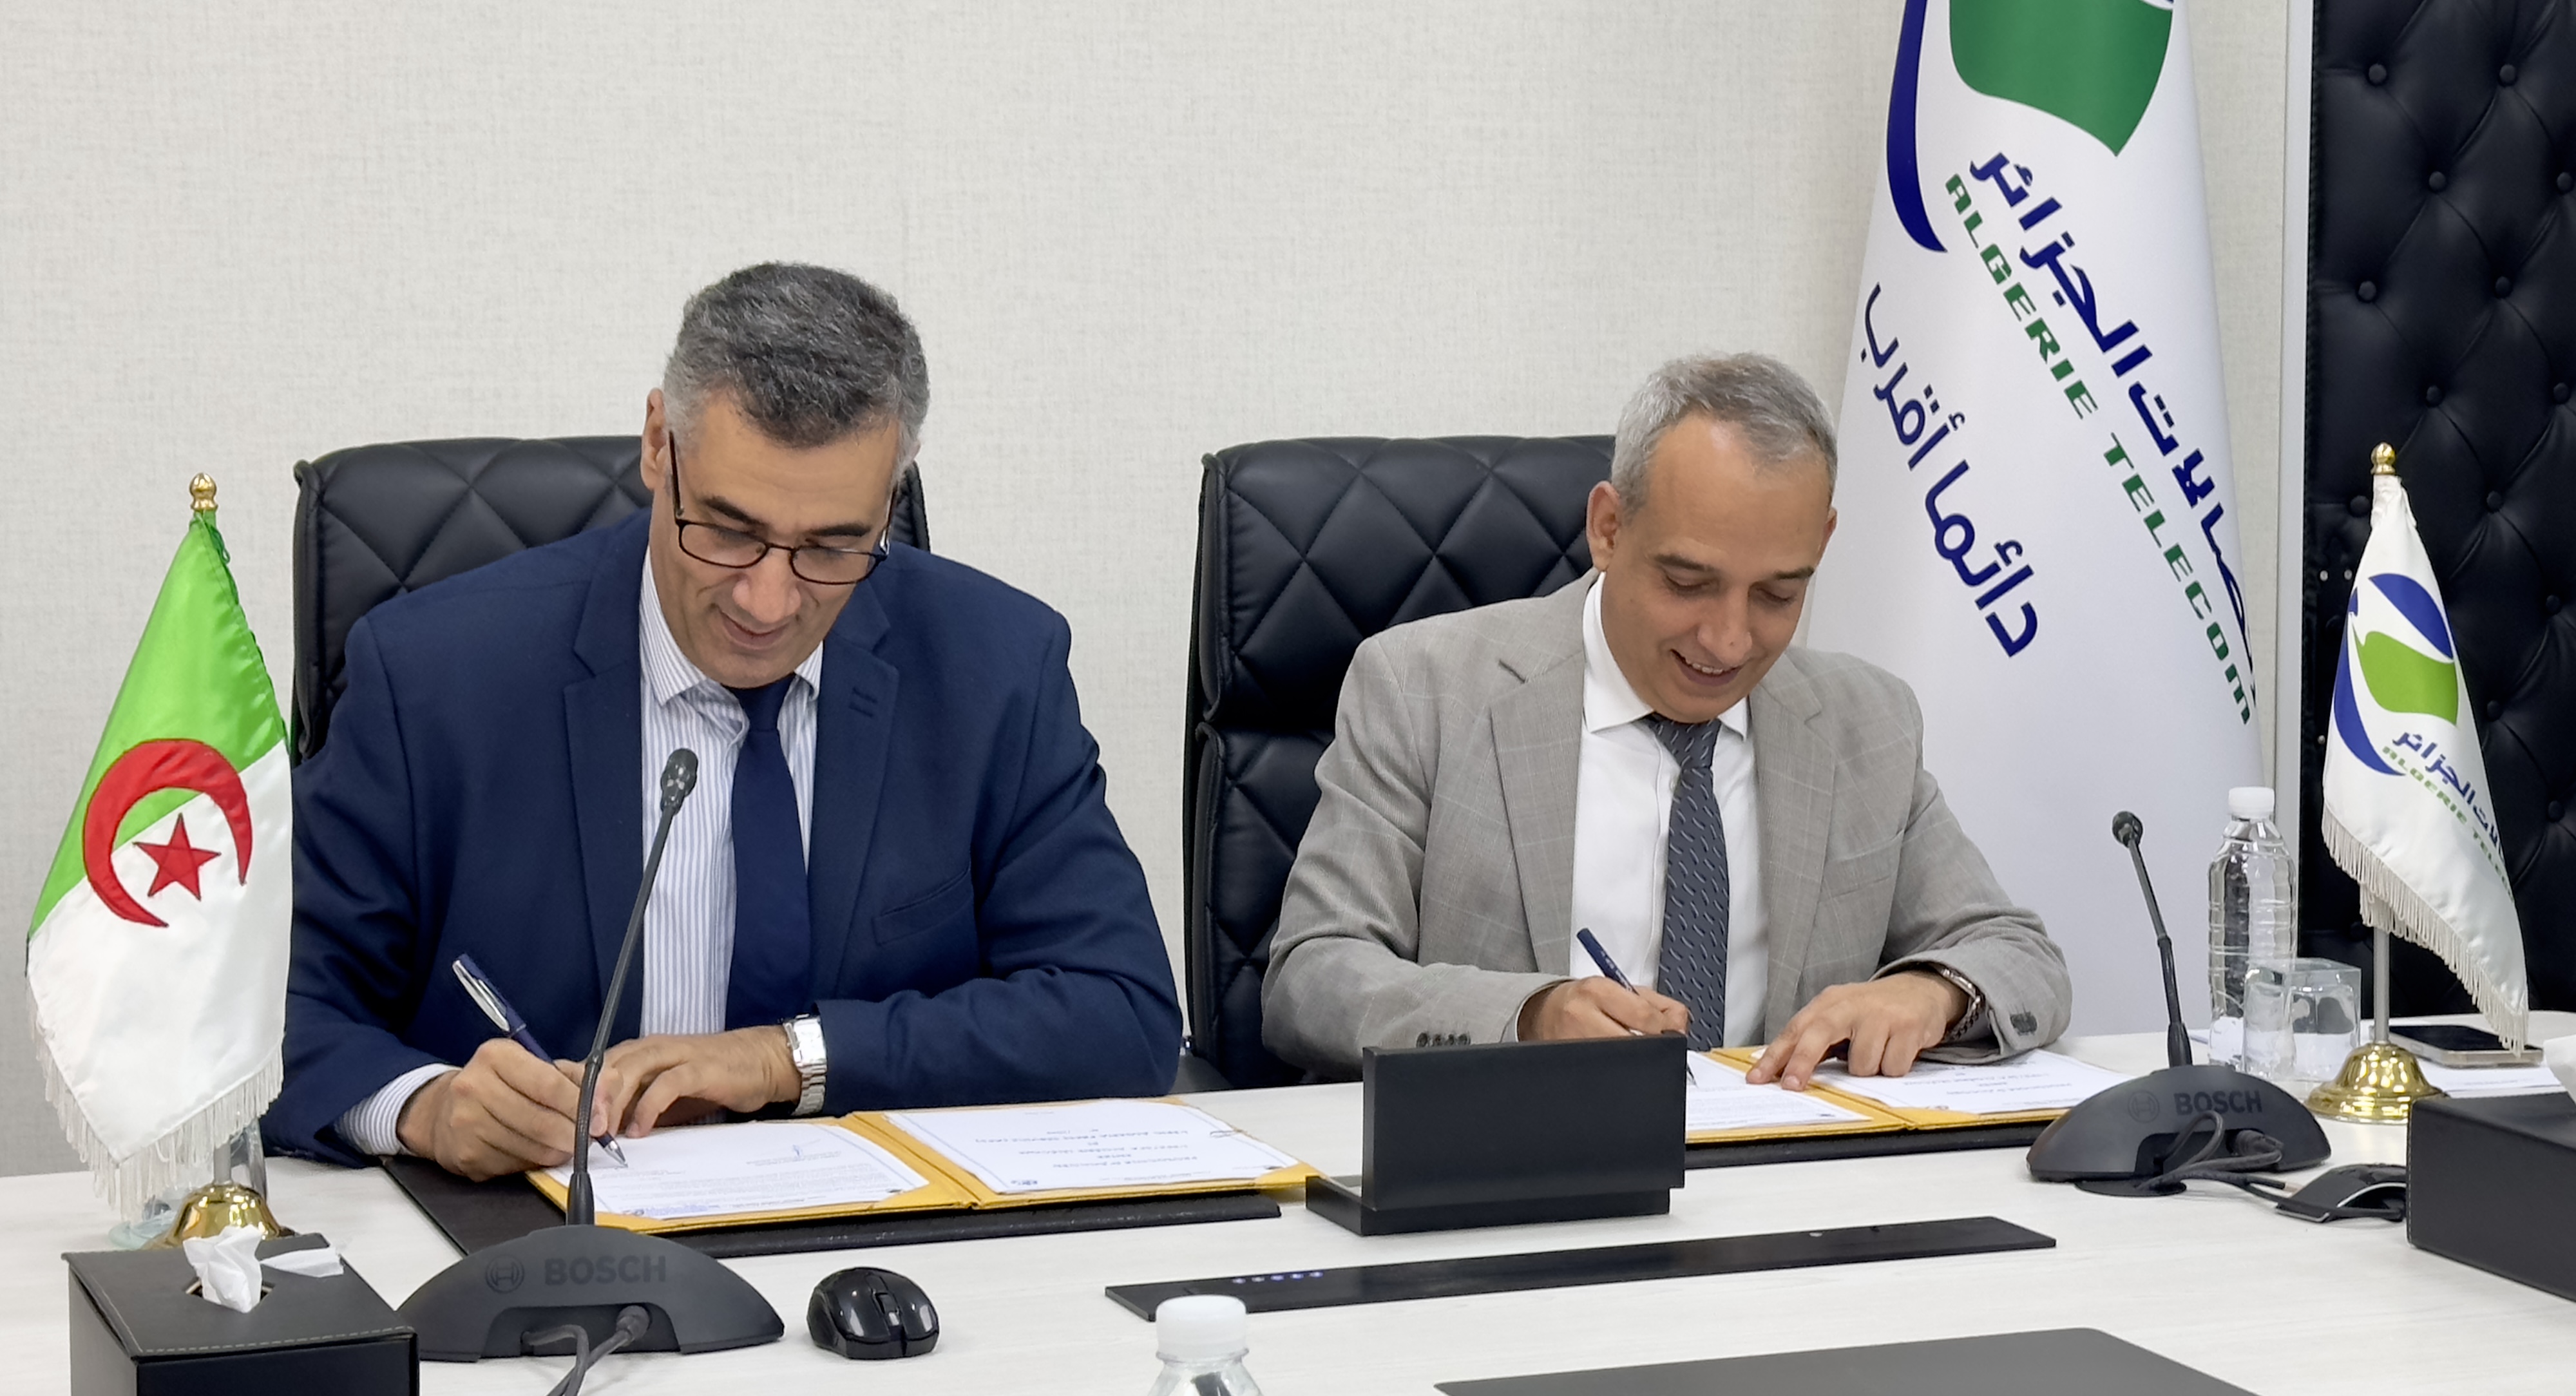 التوقيع على بروتوكول اتفاق بين إتصالات الجزائر ووكالة الأنباء الجزائرية